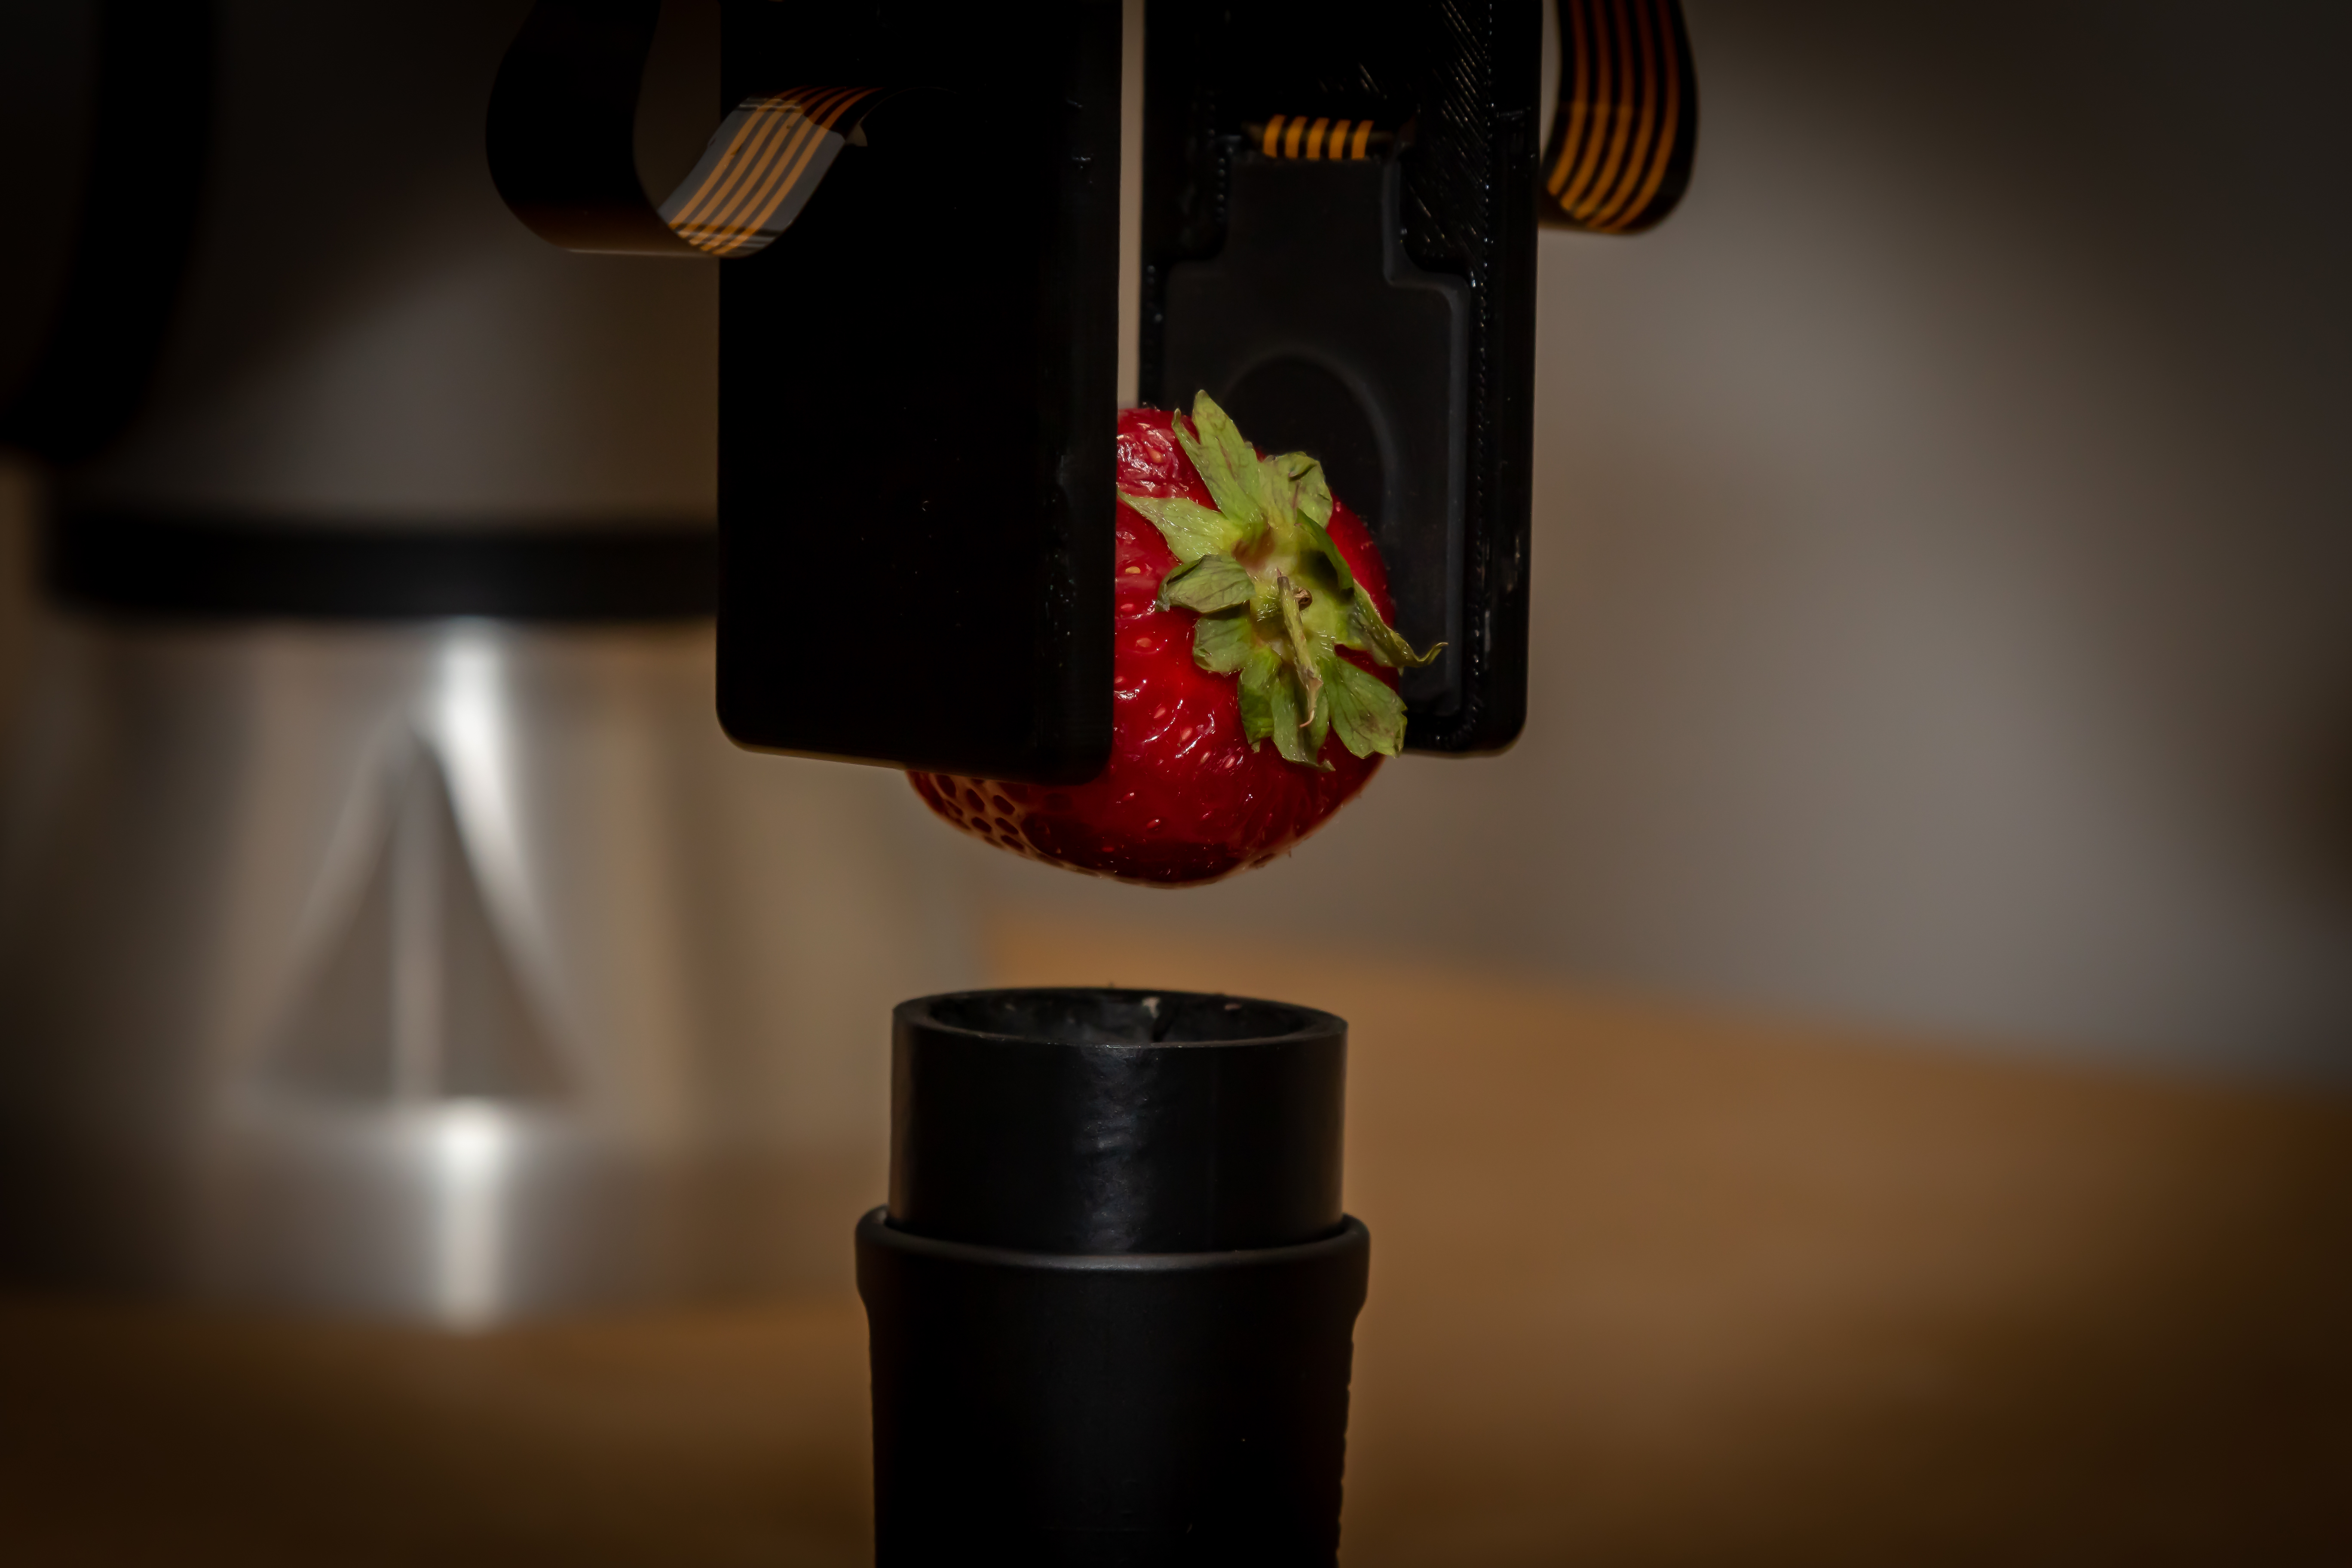 Triaxial Sensor Strawberry Grasp